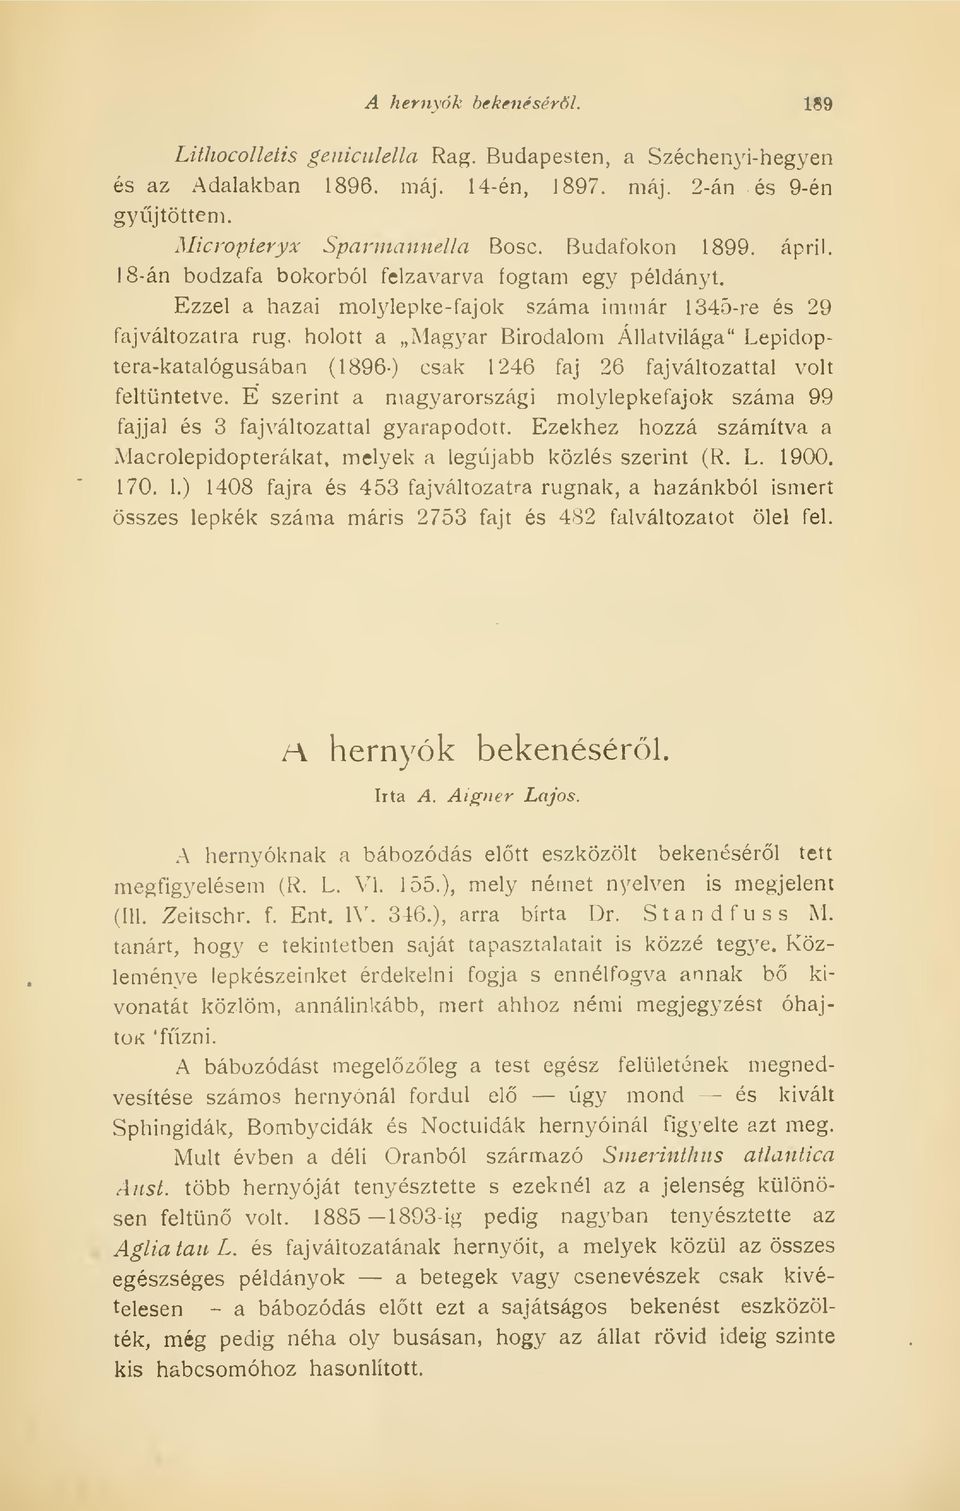 holott a Magyar Birodalom Állatvilága" Lepidoptera-katalógusában (1896) csak 1246 faj 26 faj változattal volt feltüntetve.